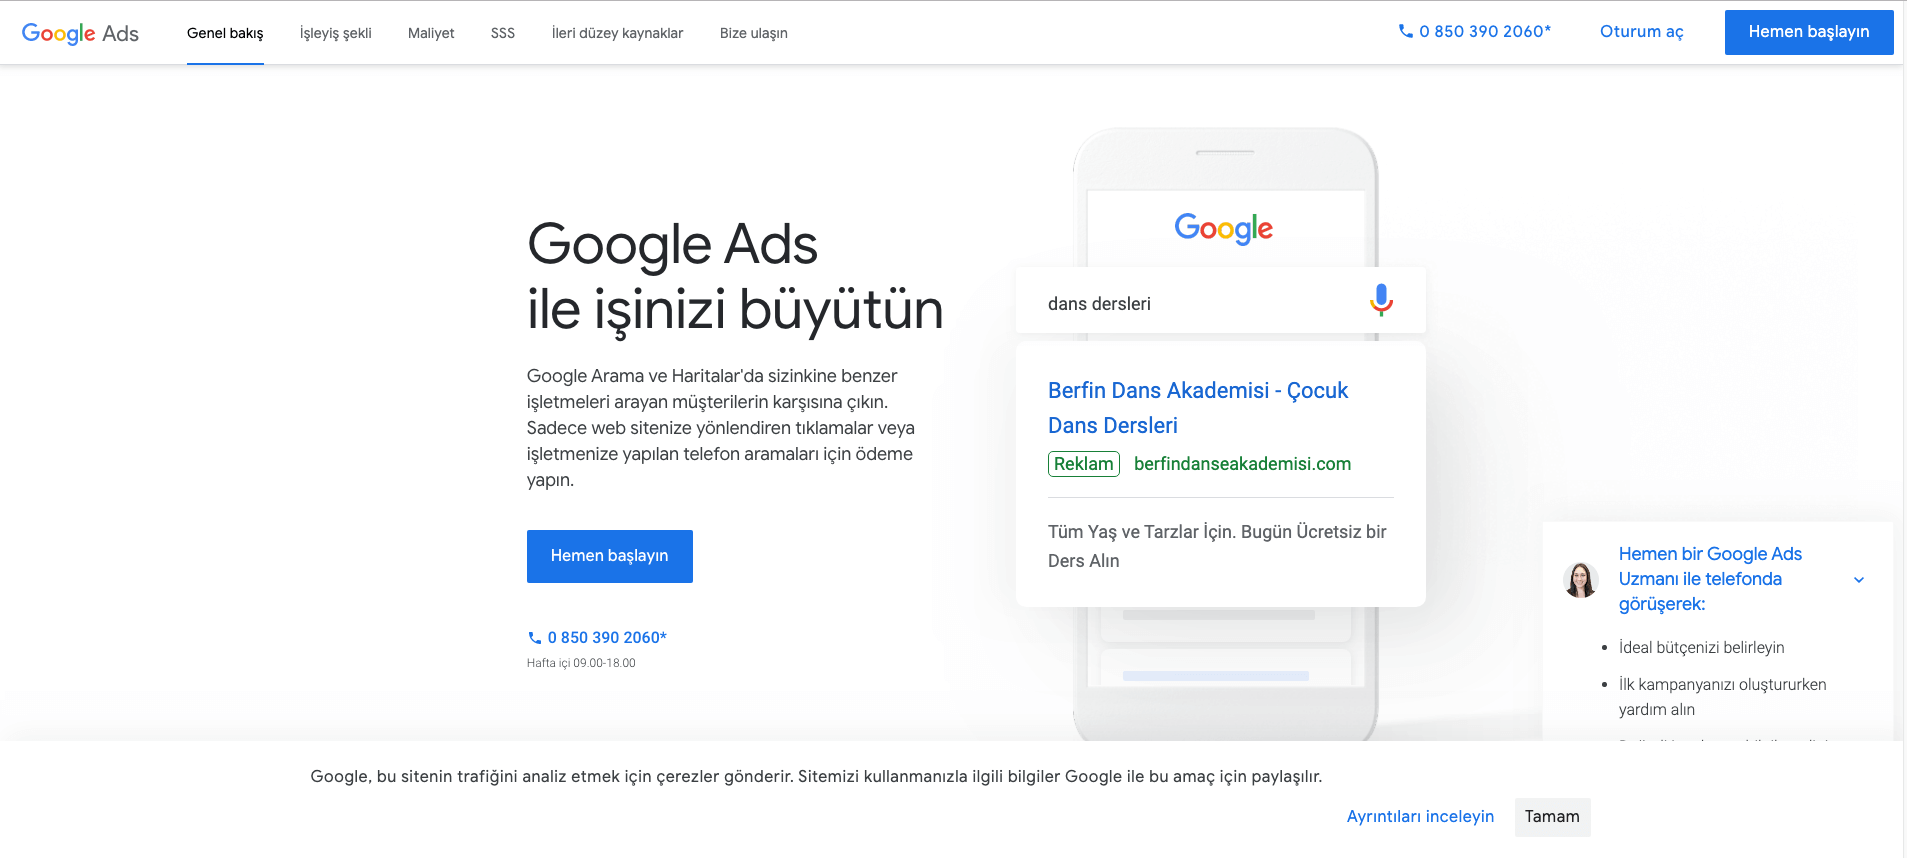 Dijitalzade.com google ads kapak görseli